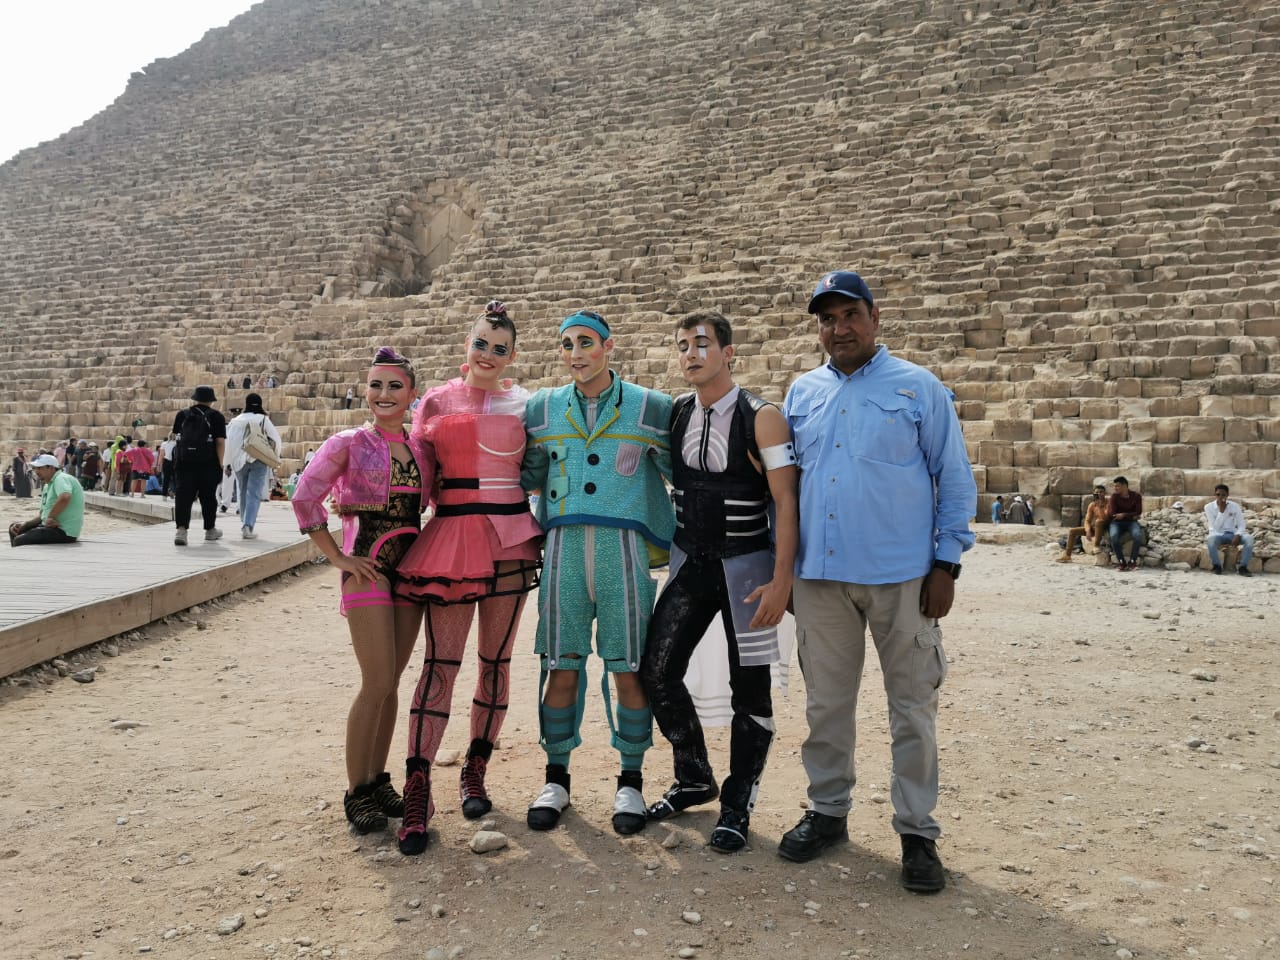 للمرة الأولى في مصر فرقة سيرك دو سولاي العالمية تقدم عروضها وتزور الأهرامات | صور